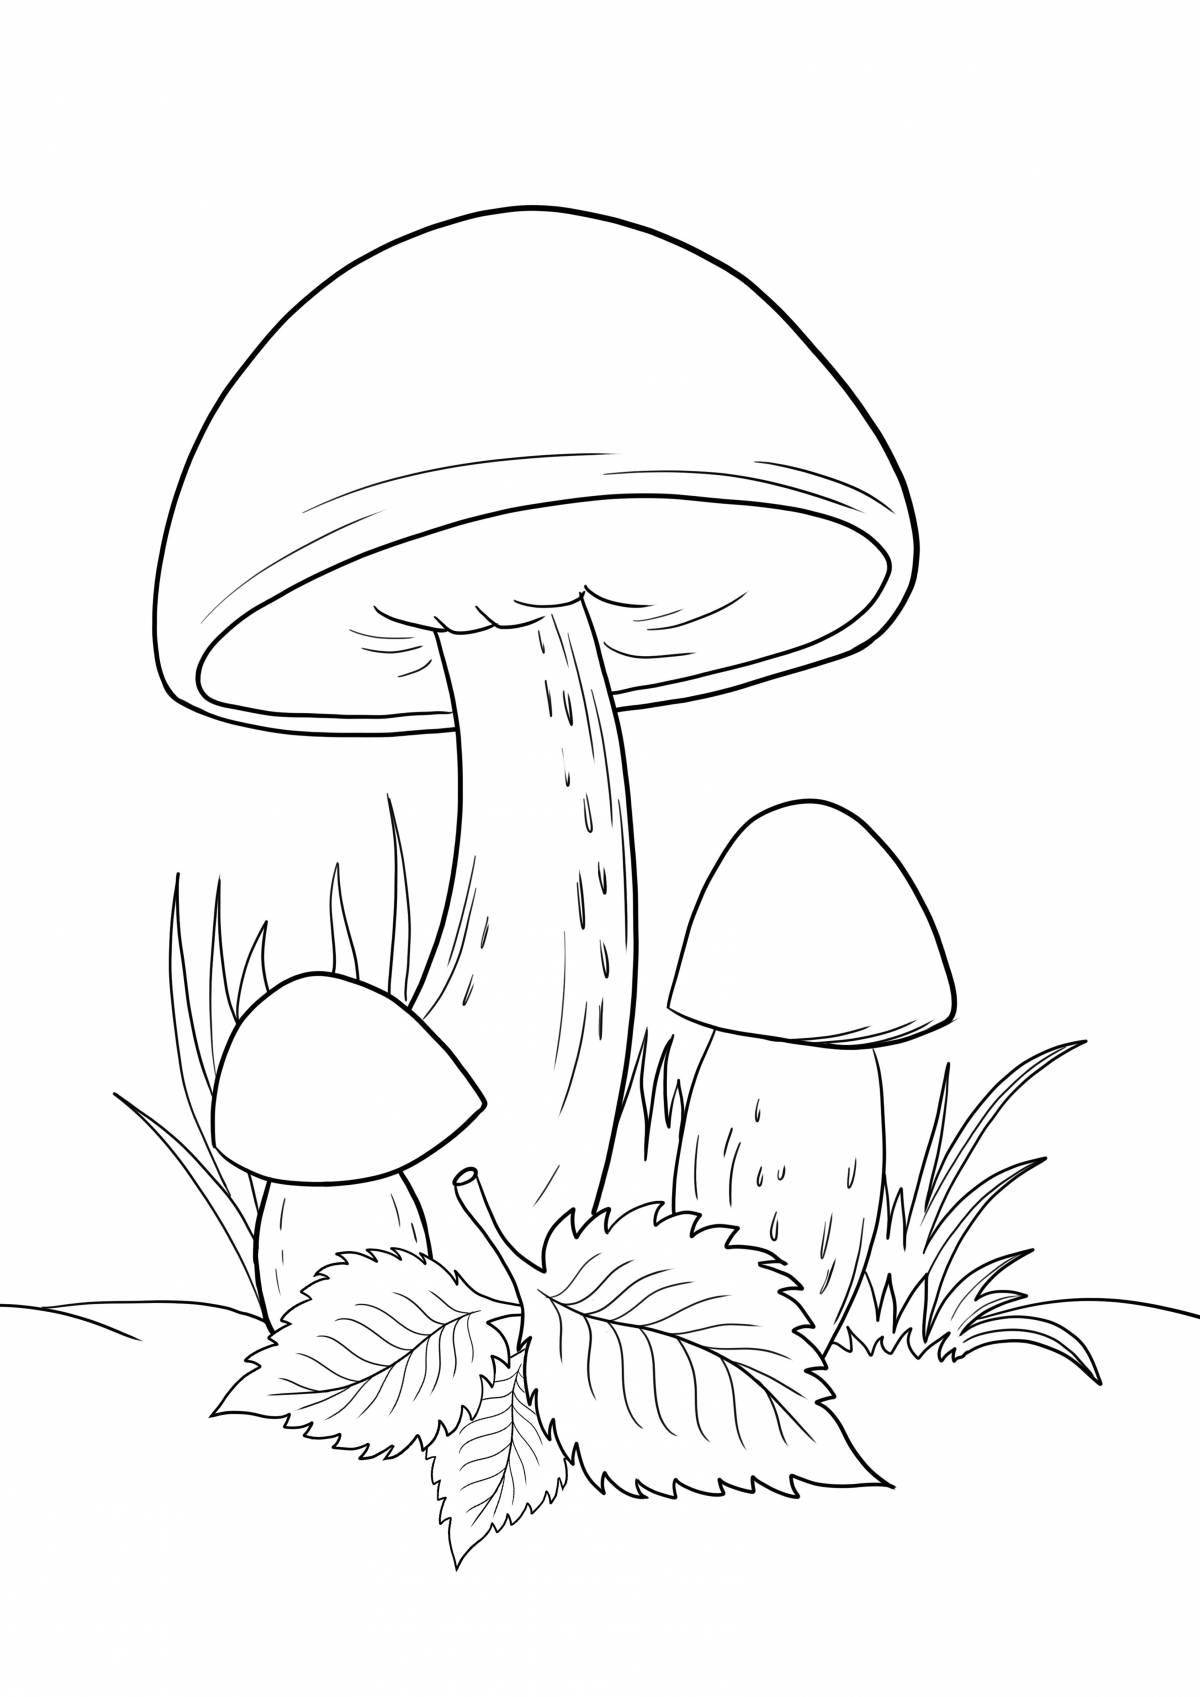 Раскраска радостный гриб для детей 6-7 лет